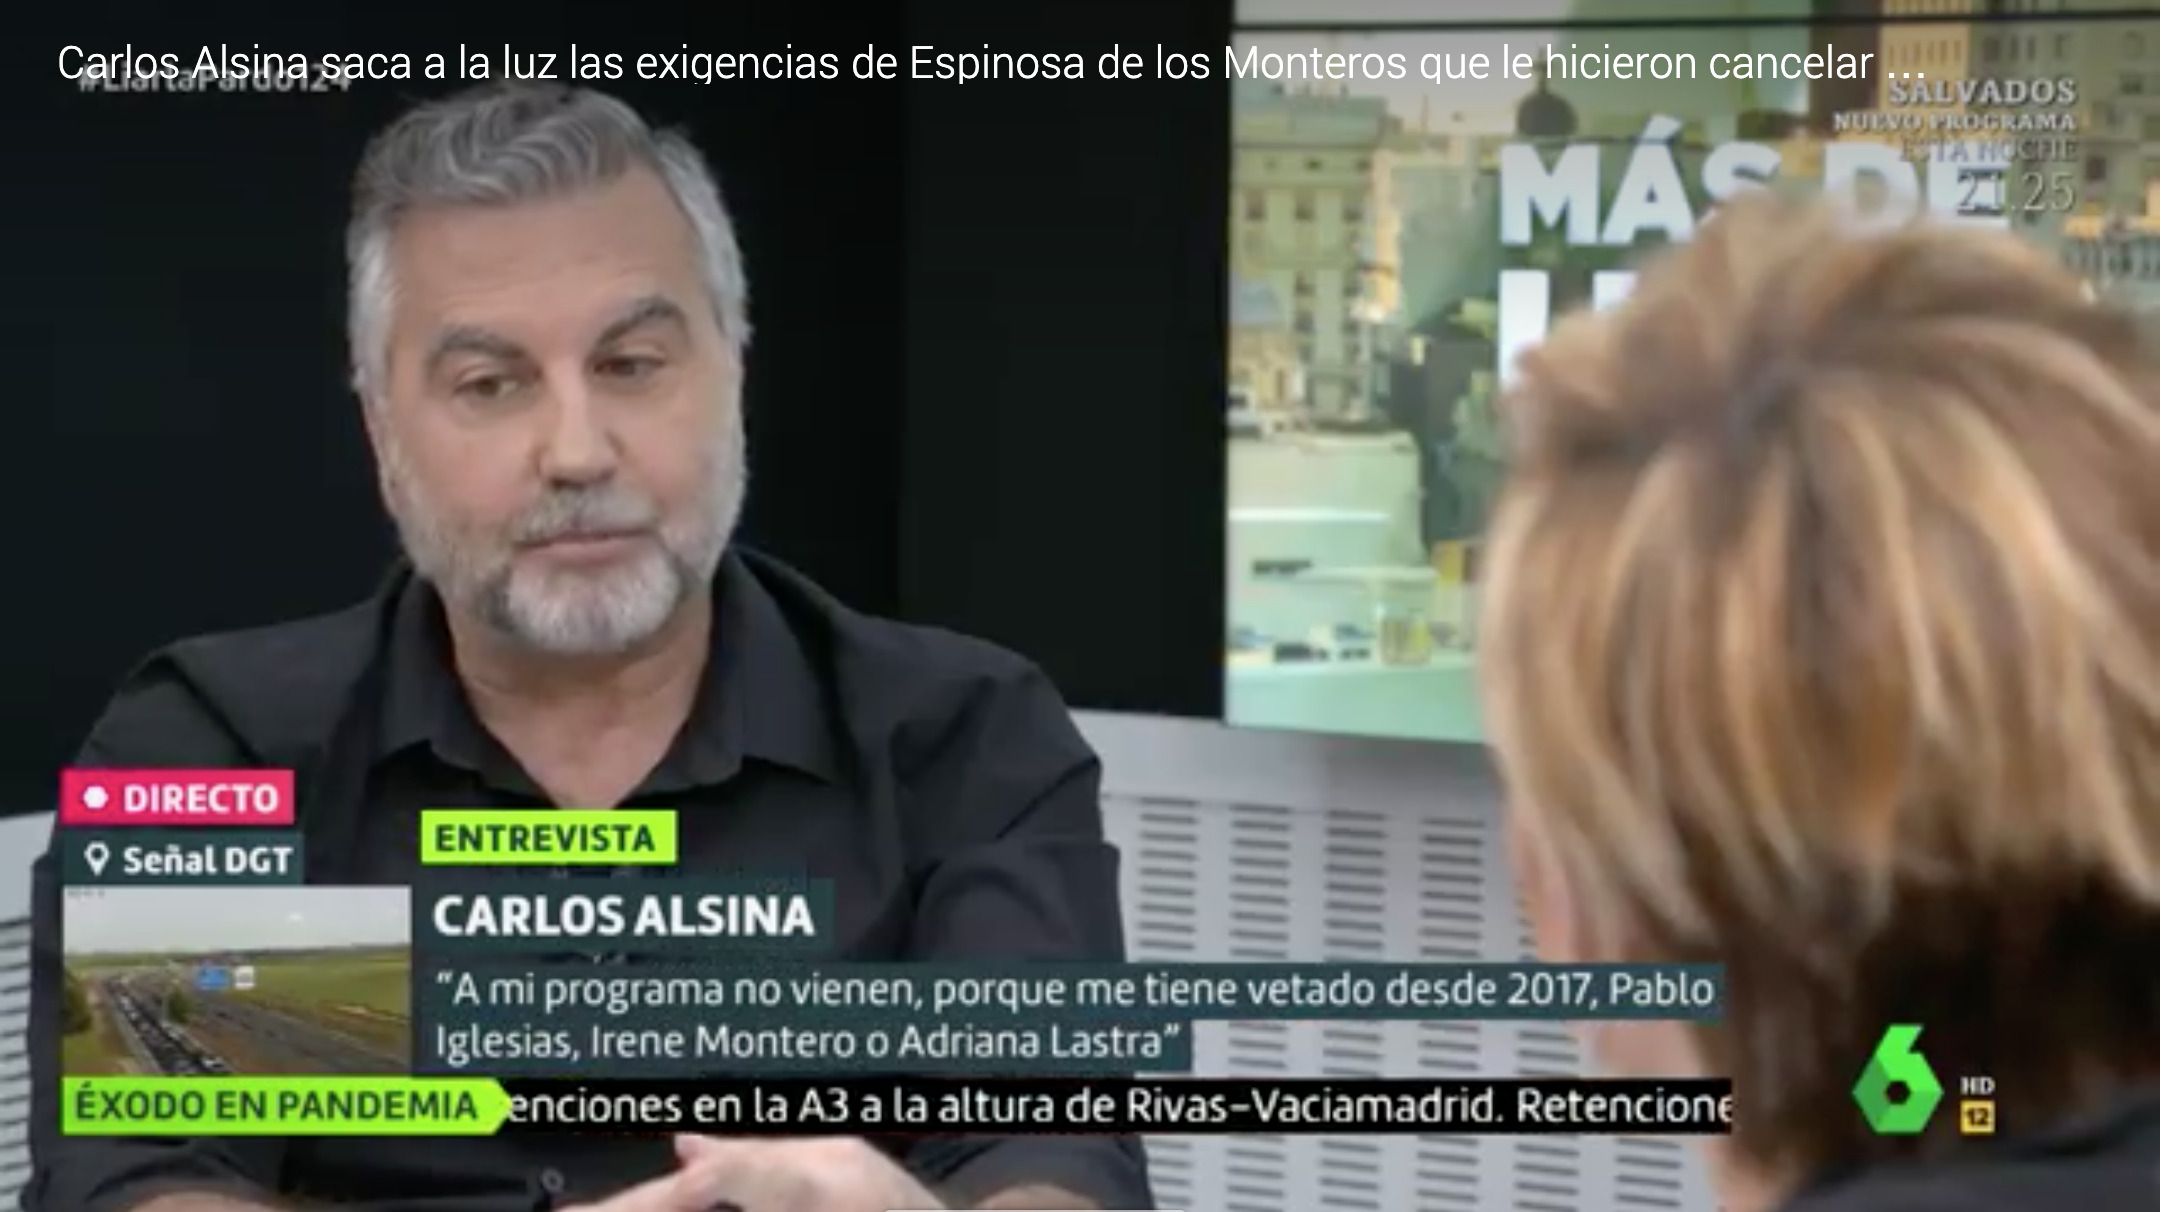 Carlos Alsina desvela las exigencias de Ivan Espinosa de los Monteros para poder entrevistarlo